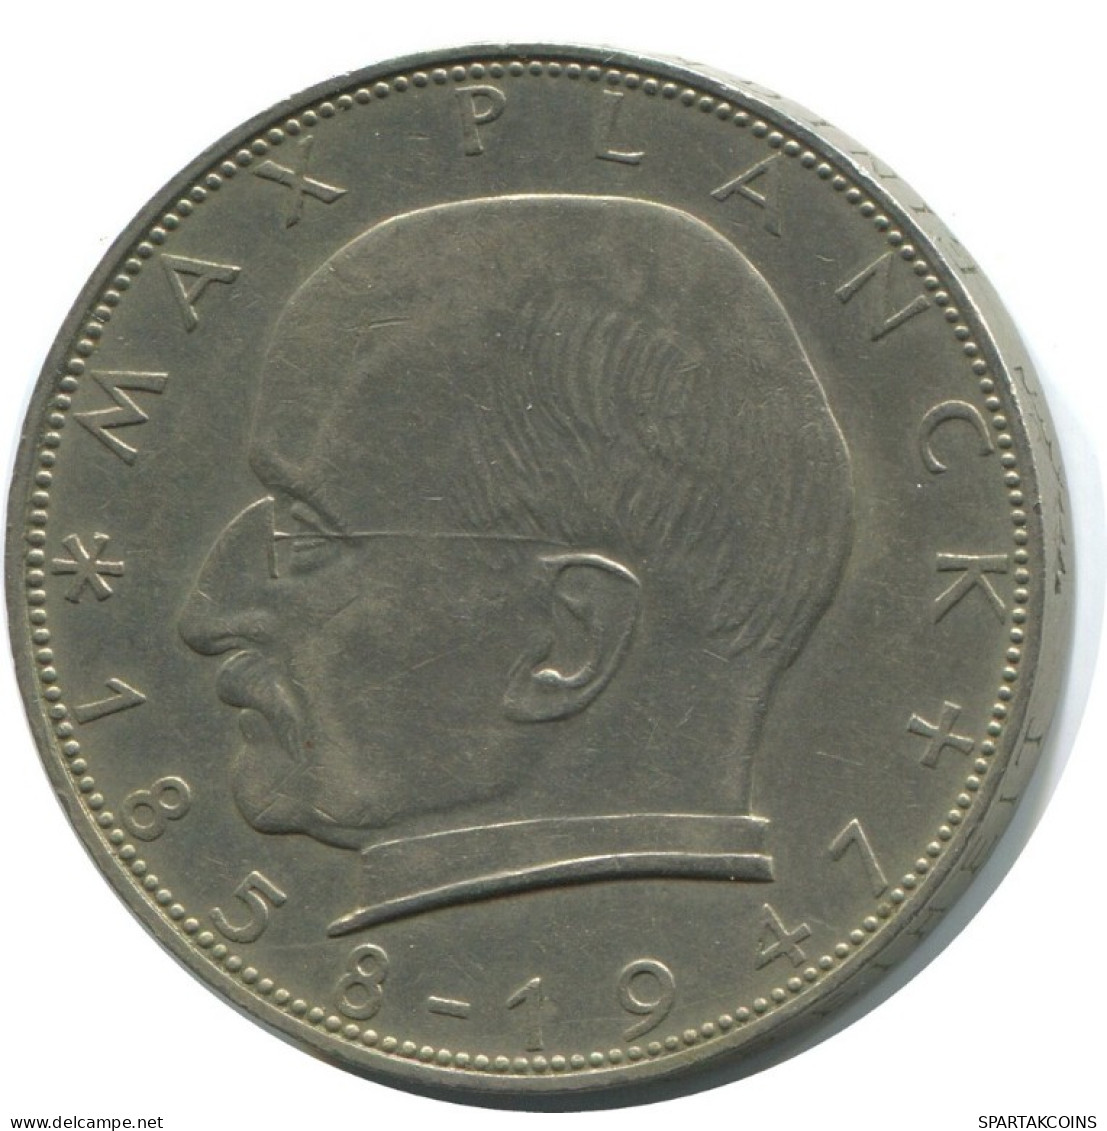 2 DM 1958 D M.PLANCK BRD ALEMANIA Moneda GERMANY #AD767.9.E.A - 2 Mark